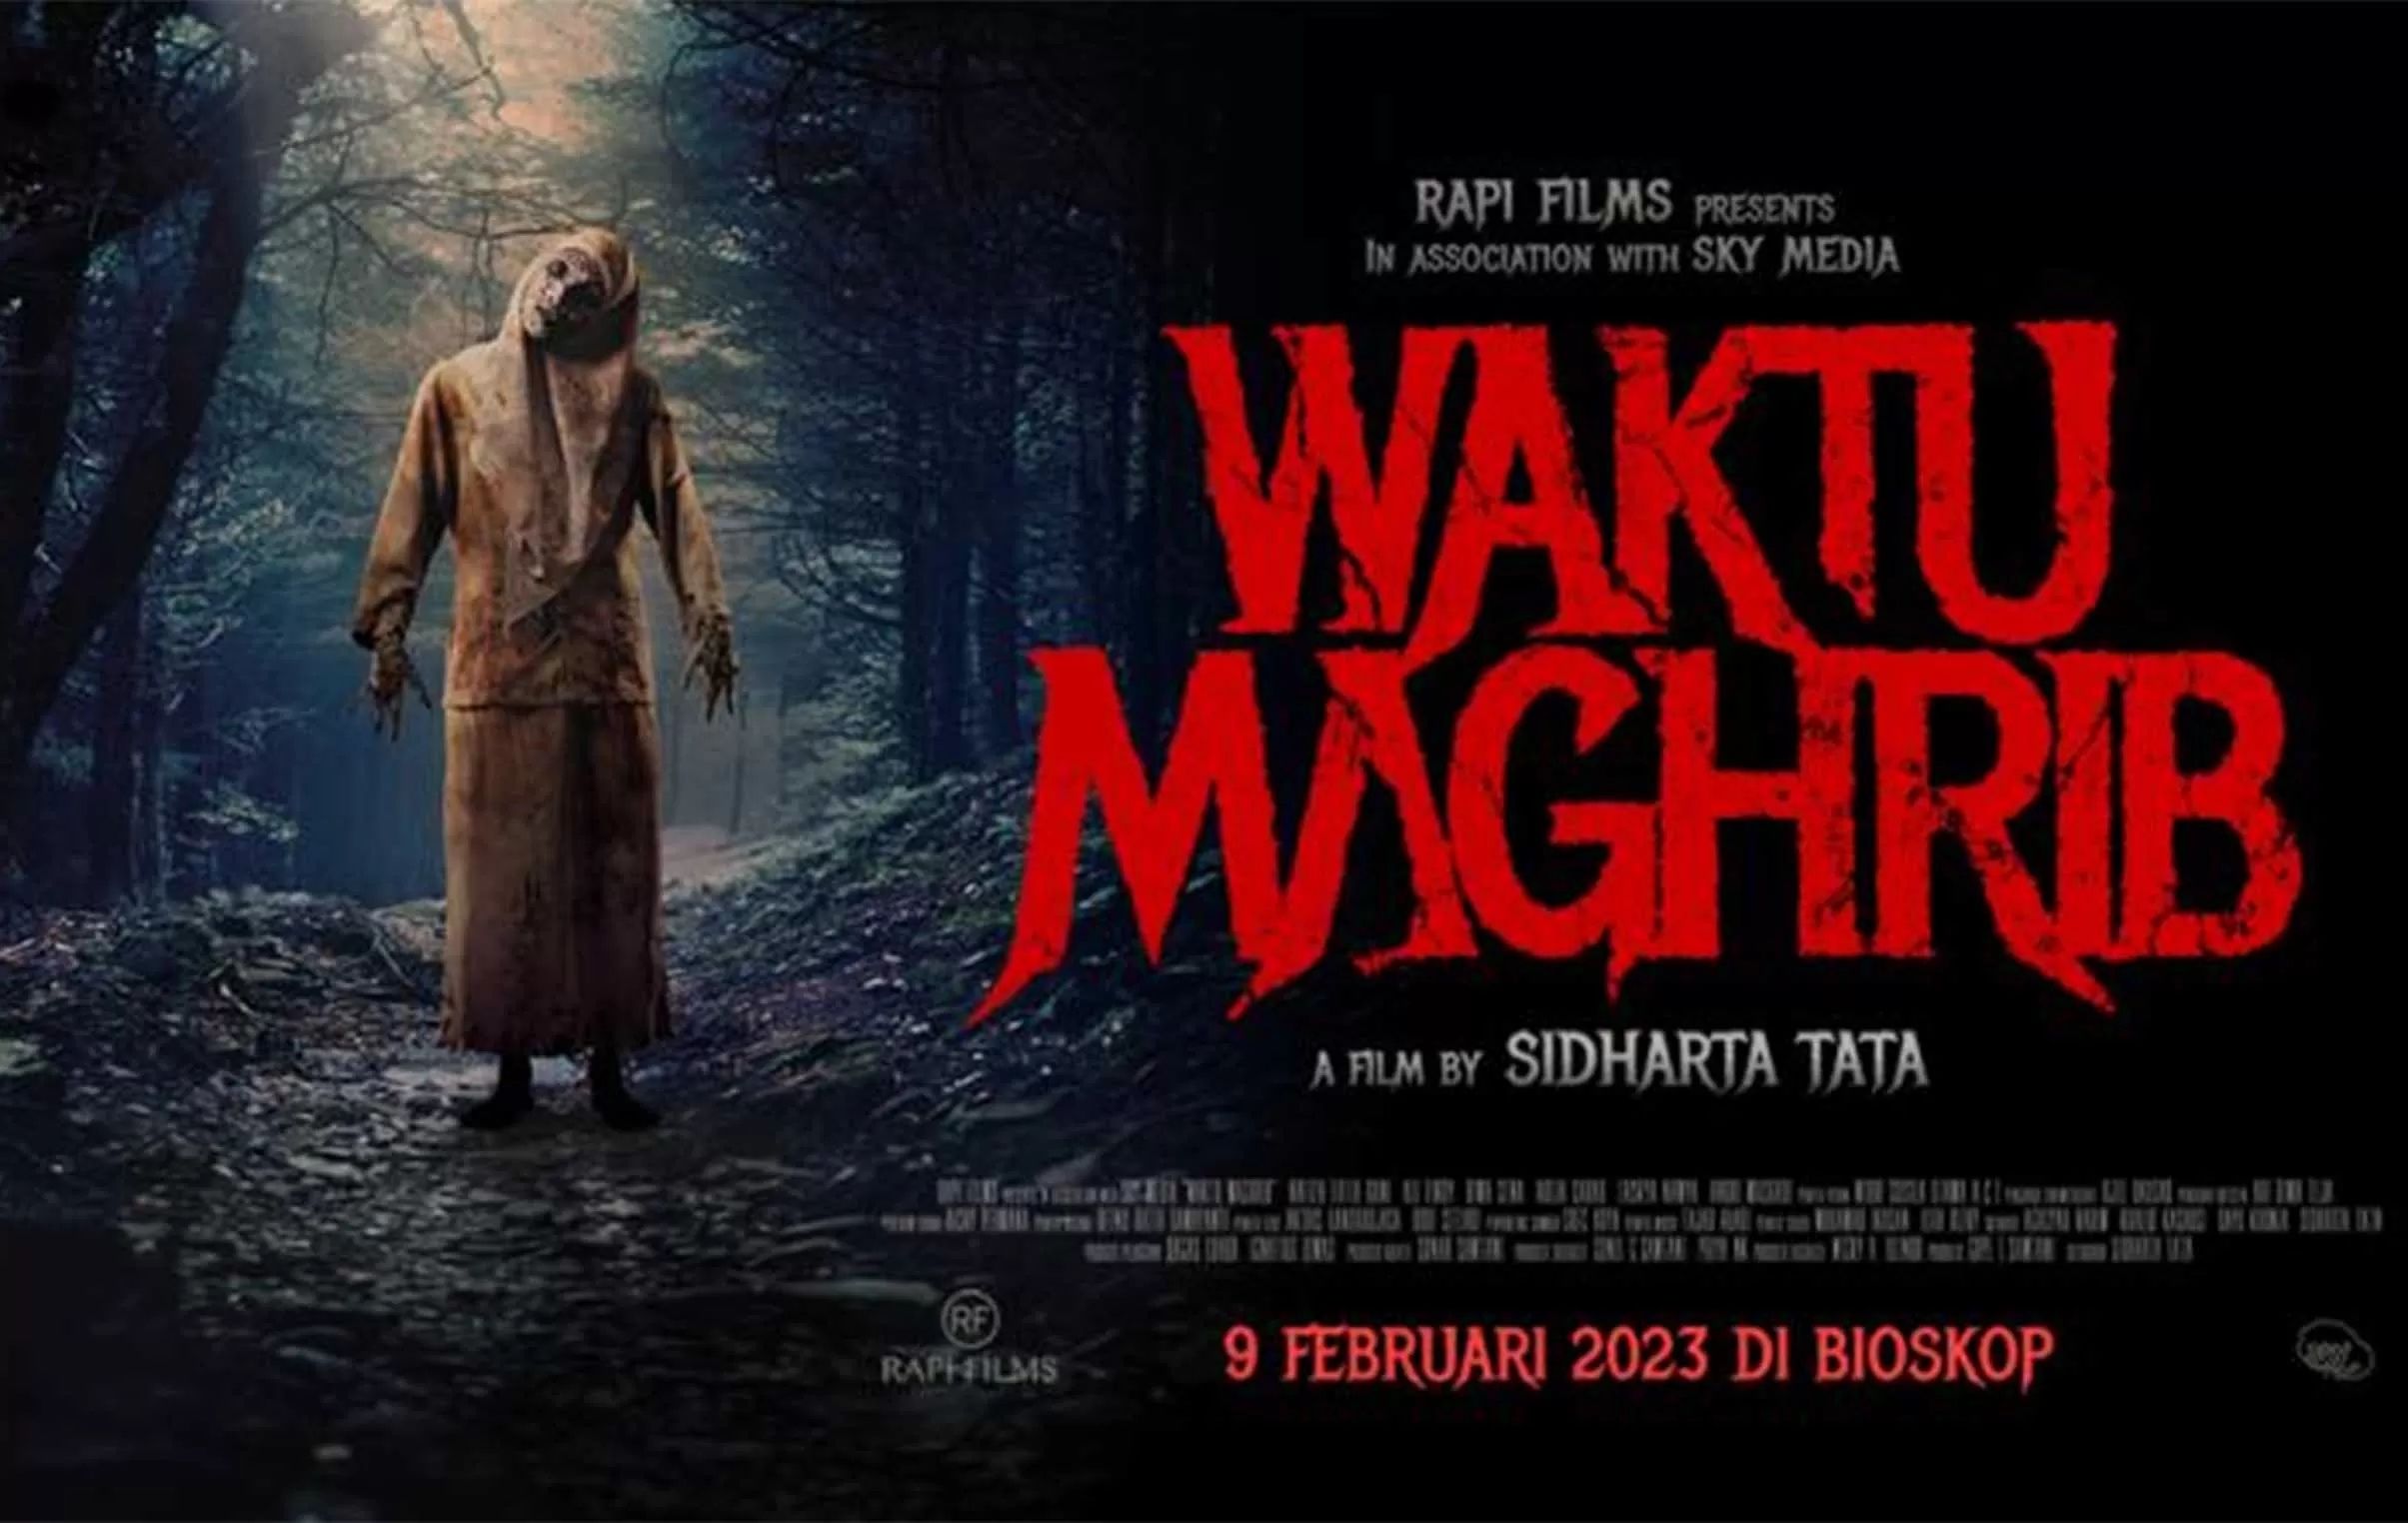 Nonton Film Waktu Maghrib Full Movie Hd Layarkaca21 Lk21 Indoxxi Lengkap Dengan Sinopsis